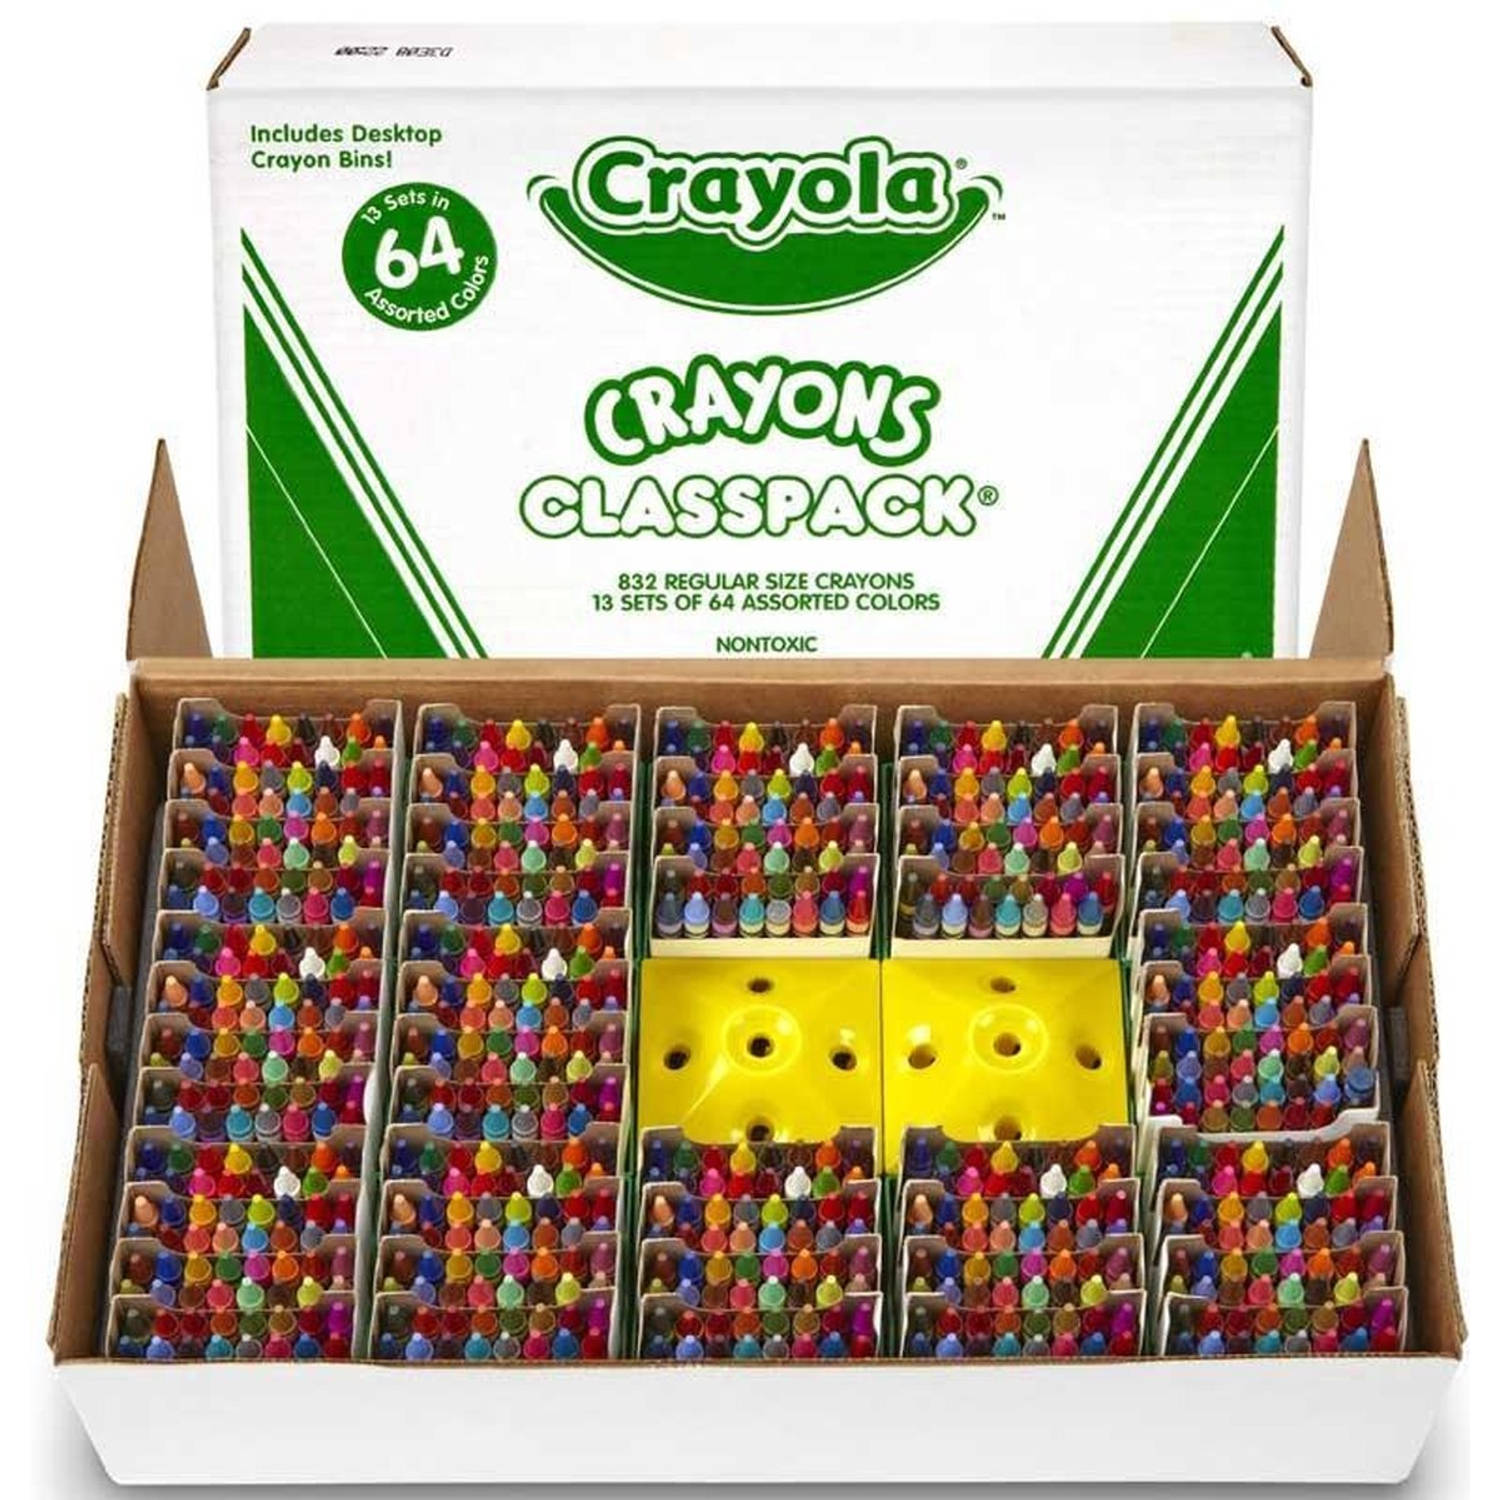 Crayola - Waskrijt - 832 Stuks - Klassenpakket